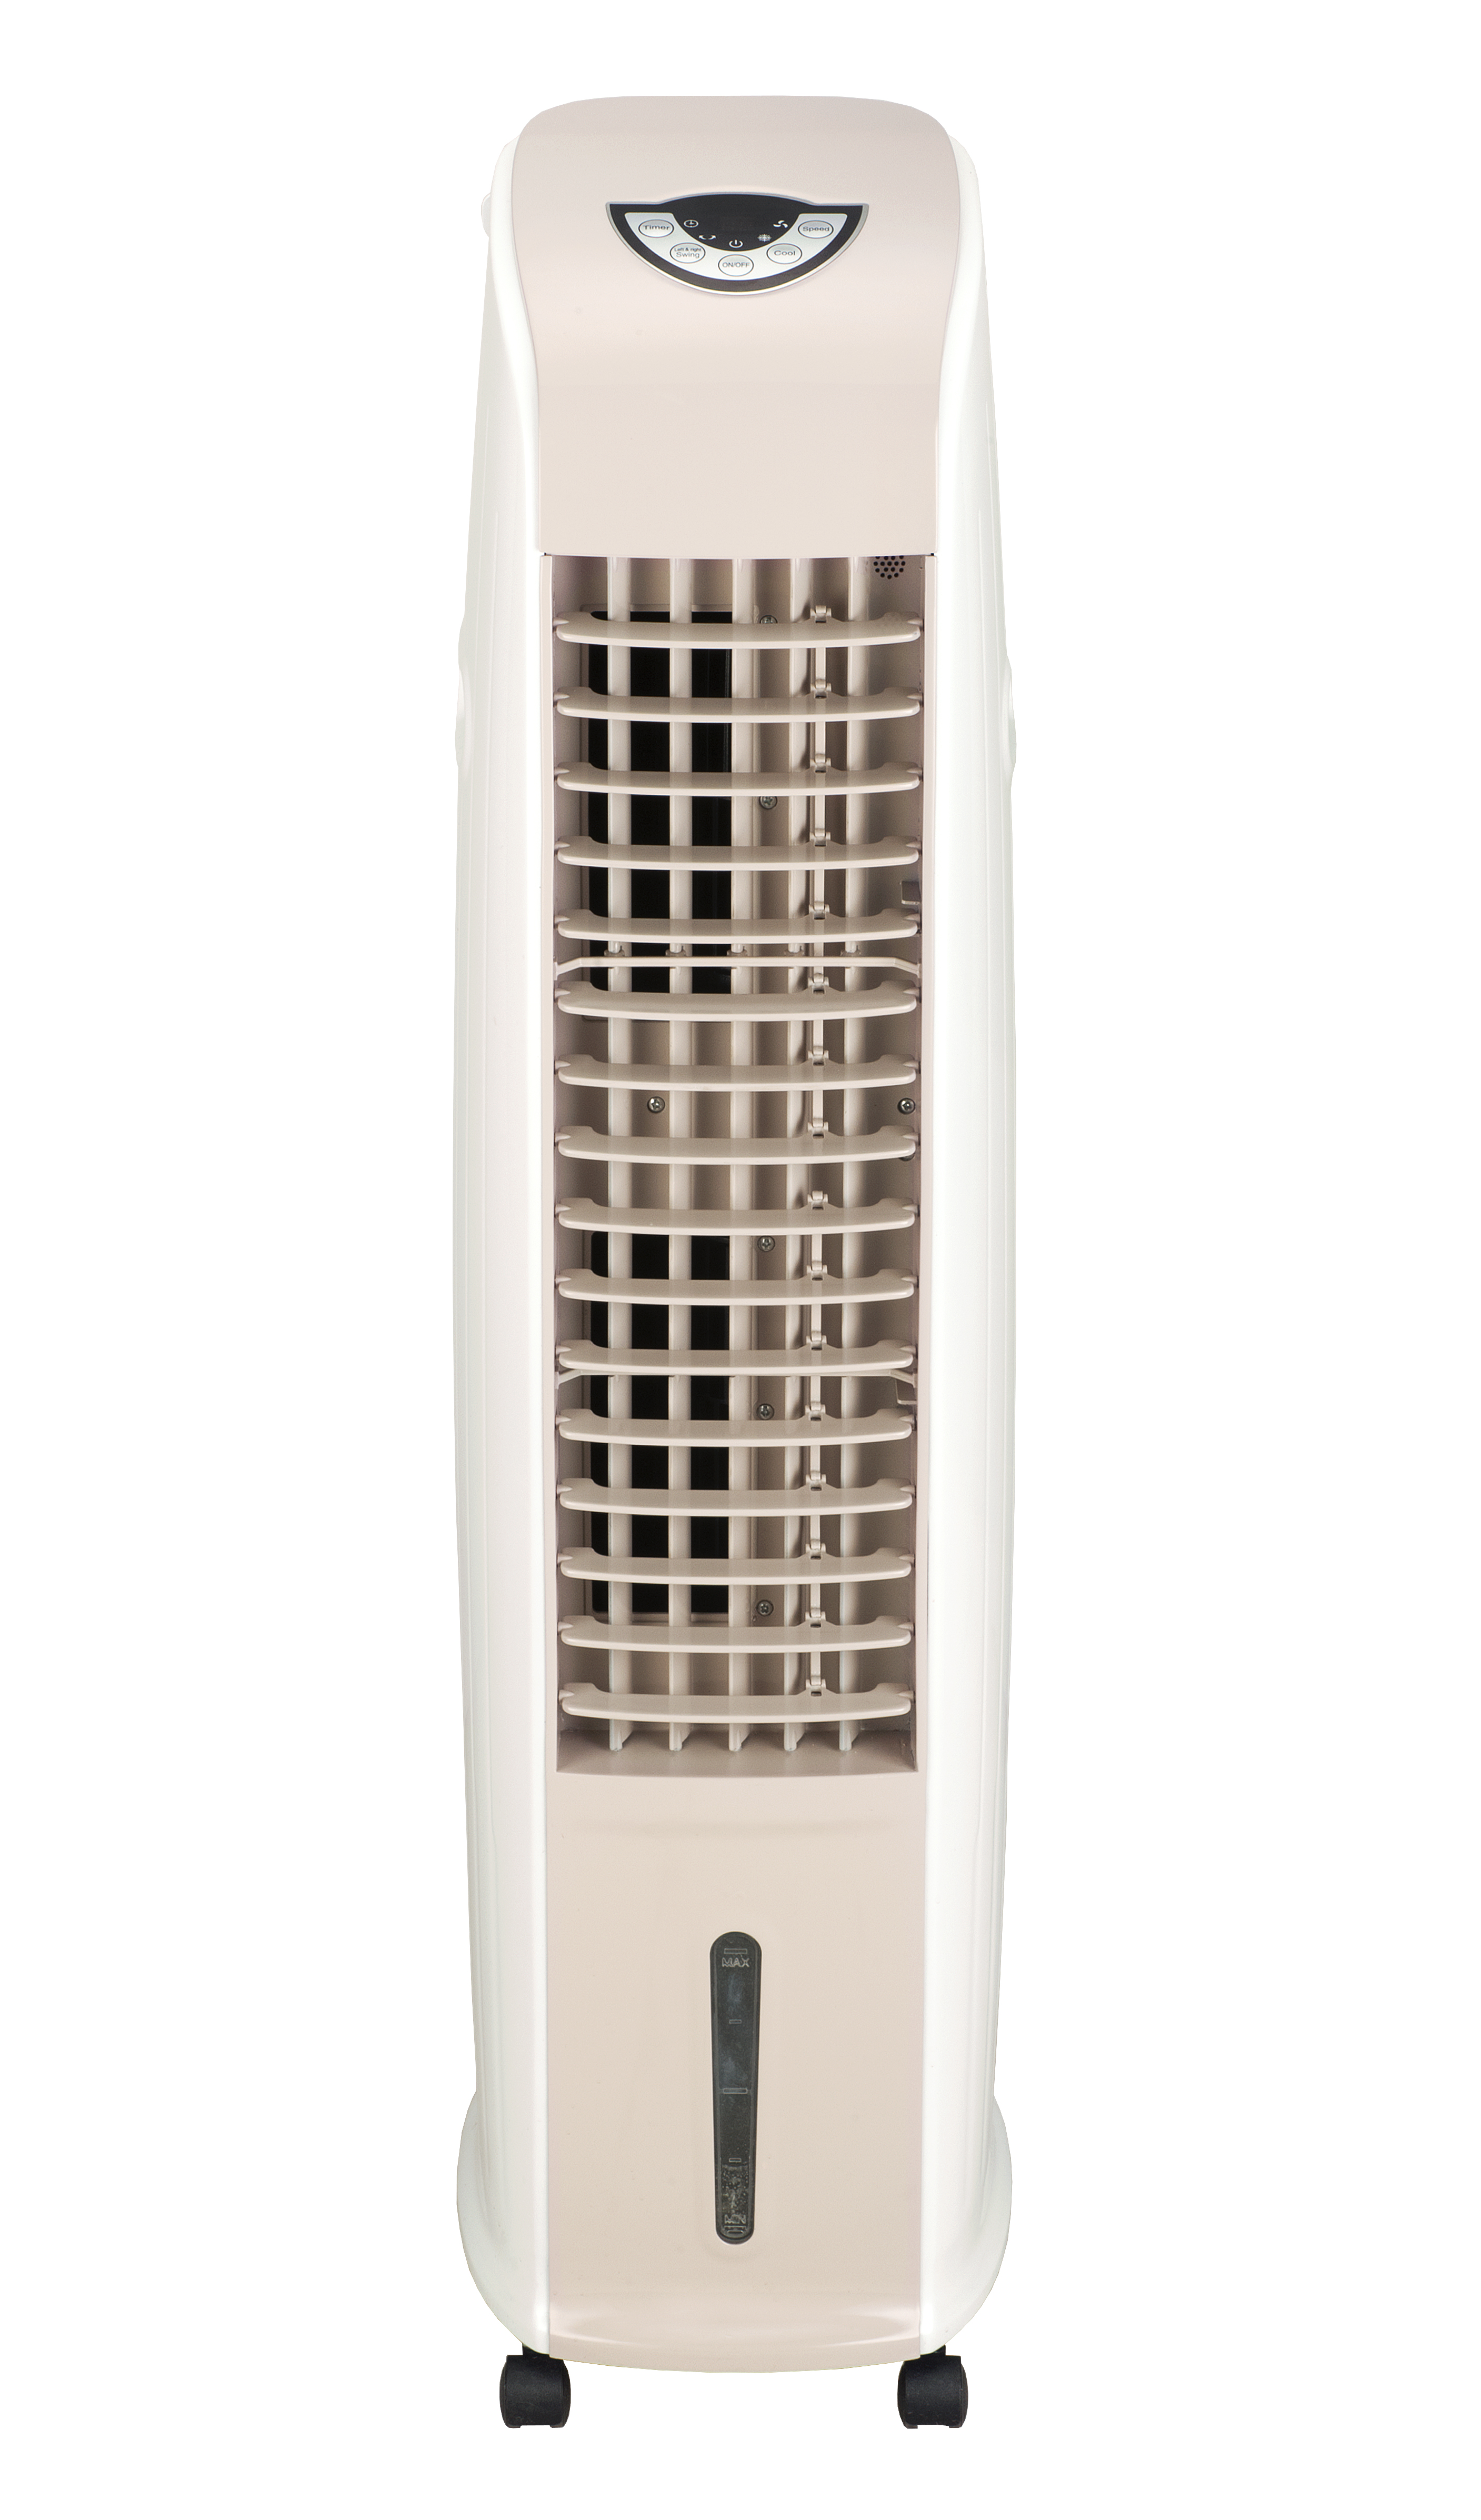 Bodenstehender Klimaanlagen-Verdunstungsluftkühler für zu Hause mit Fernbedienung. Bodenstehender Luftkühler für zu Hause